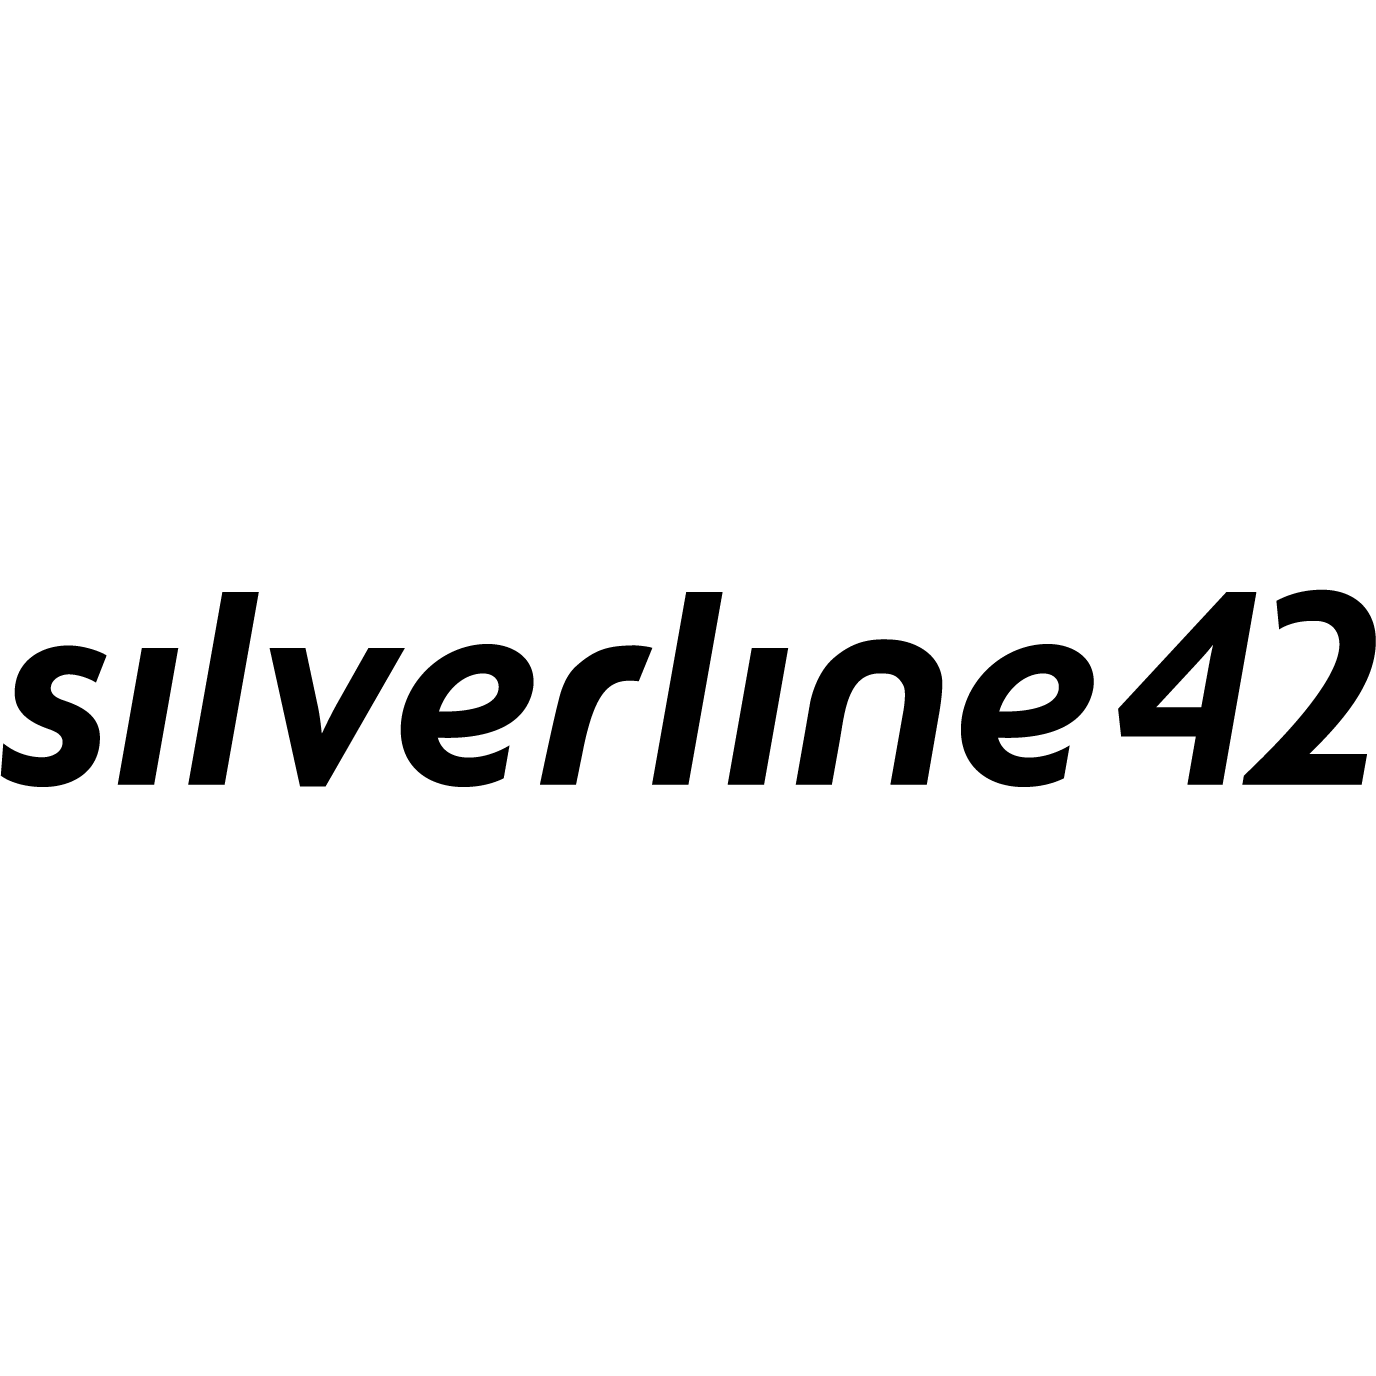 silverline42 gmbh 6841